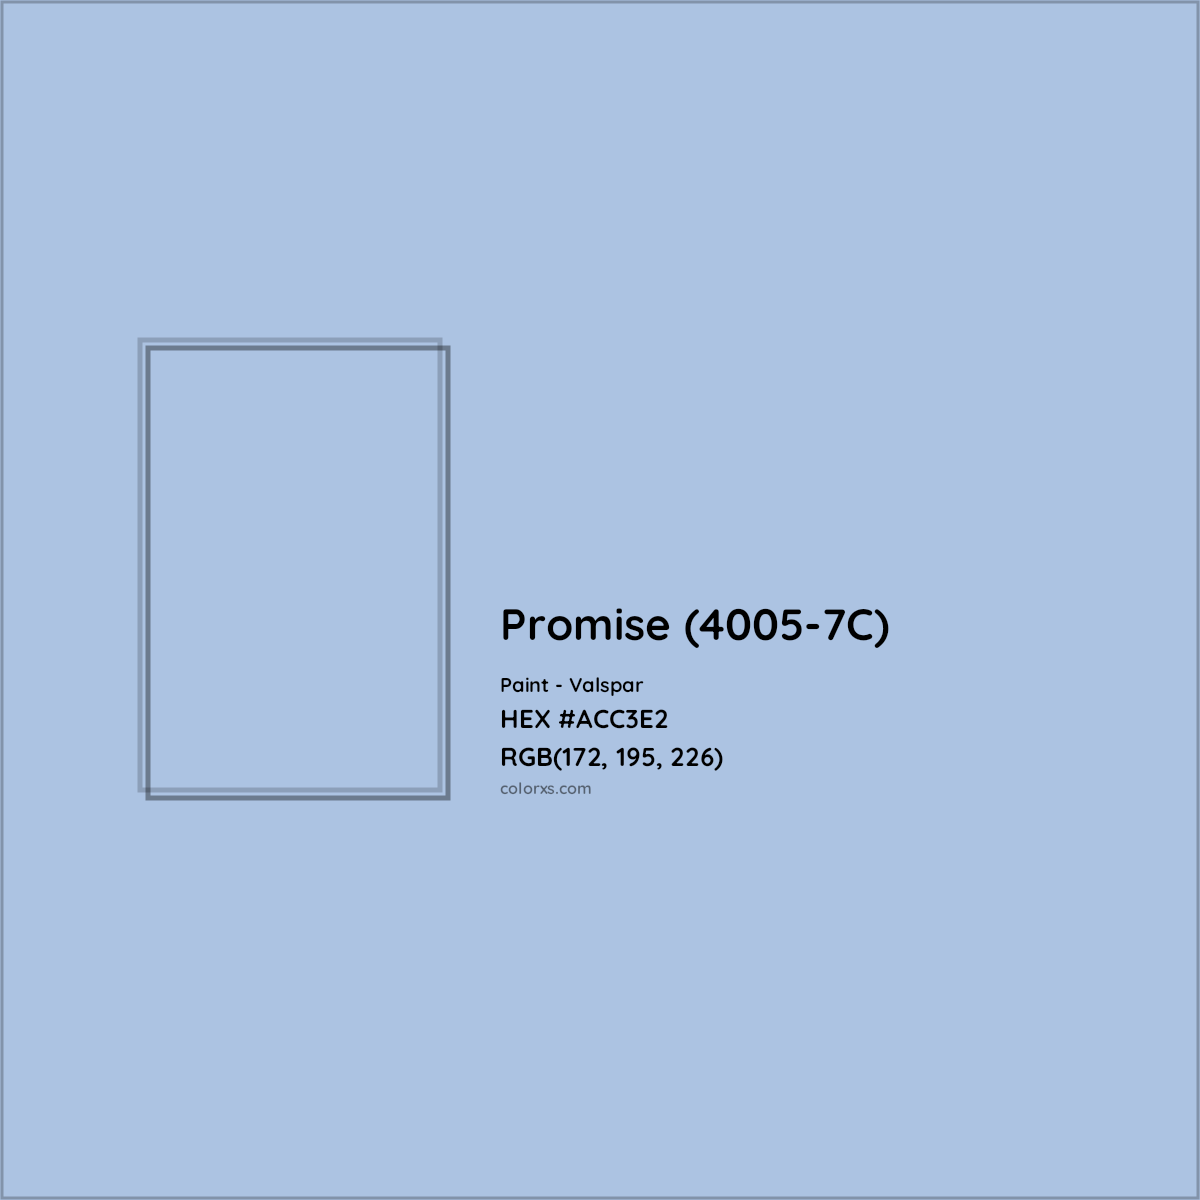 HEX #ACC3E2 Promise (4005-7C) Paint Valspar - Color Code